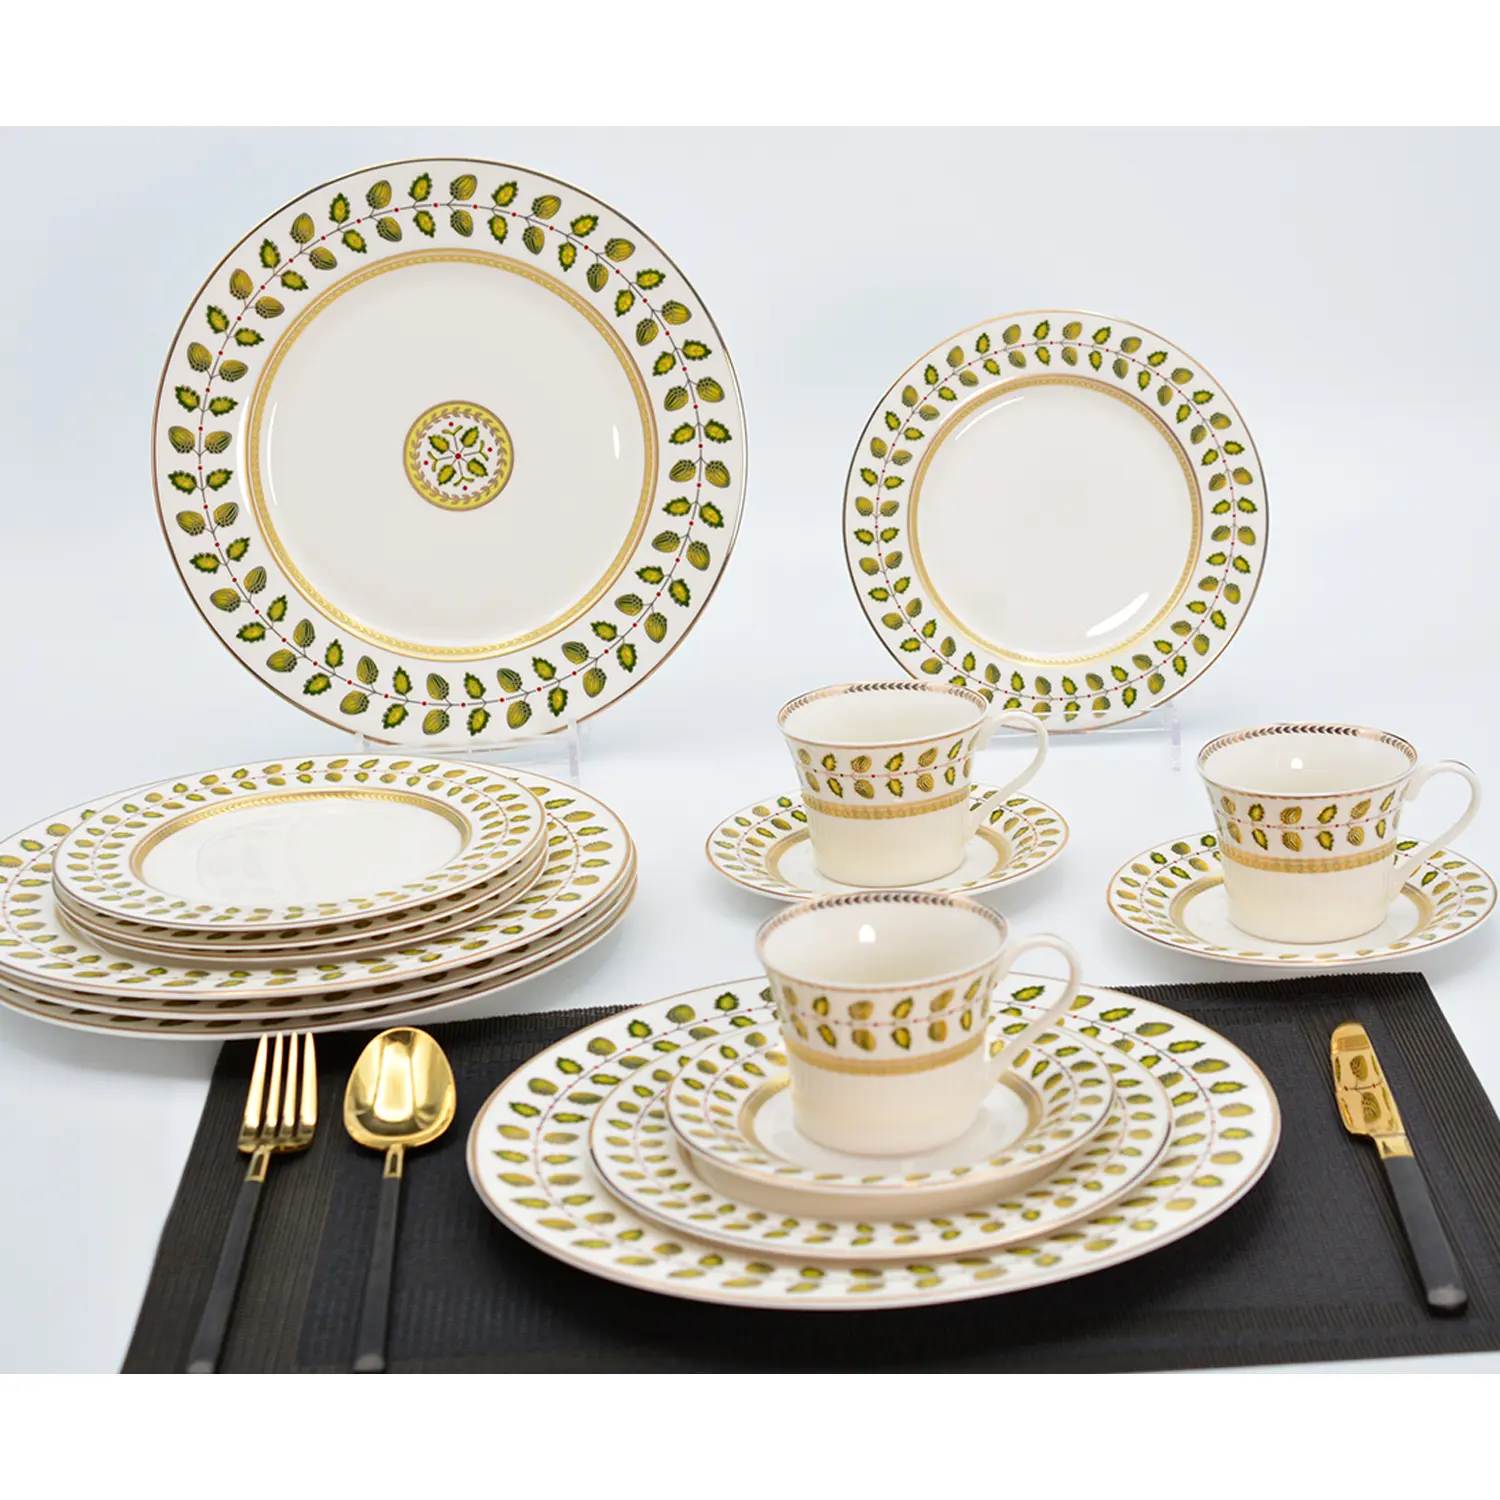 Alta qualità disegno del fiore germania in rilievo 999.9 puro oro cena set e tea set